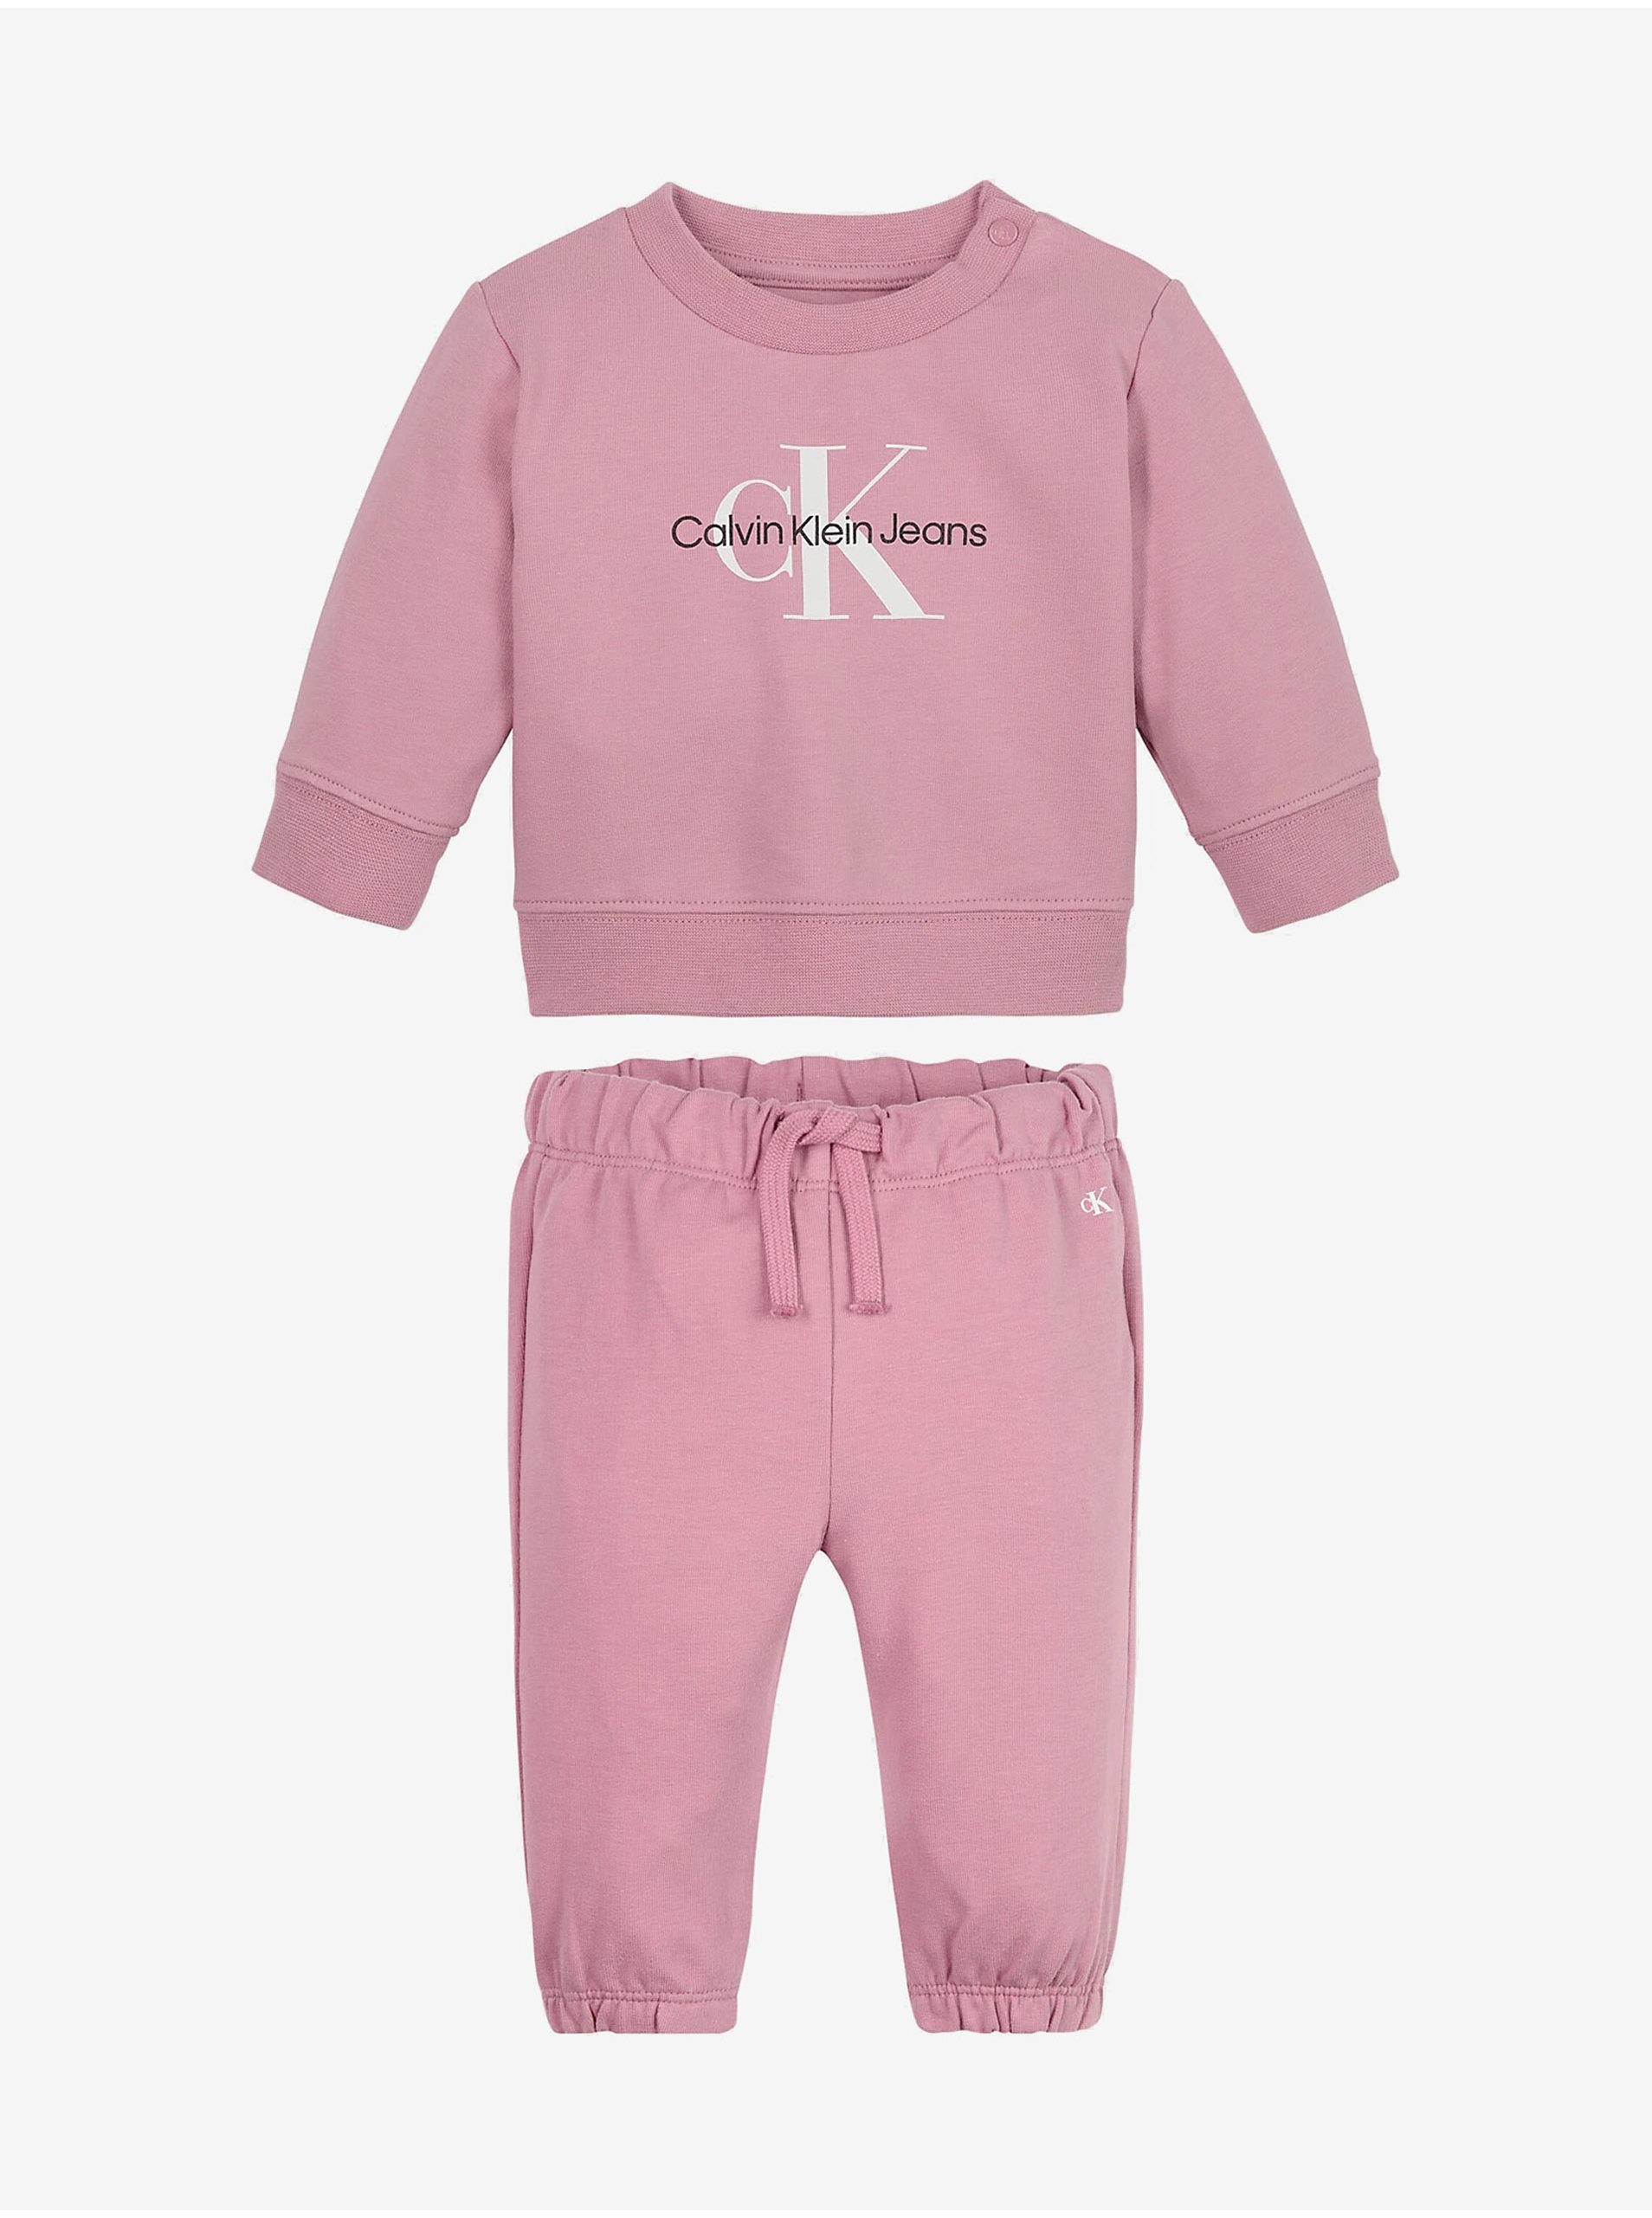 Lacno Sada dievčenskej mikiny a teplákov v ružovej farbe Calvin Klein Jeans